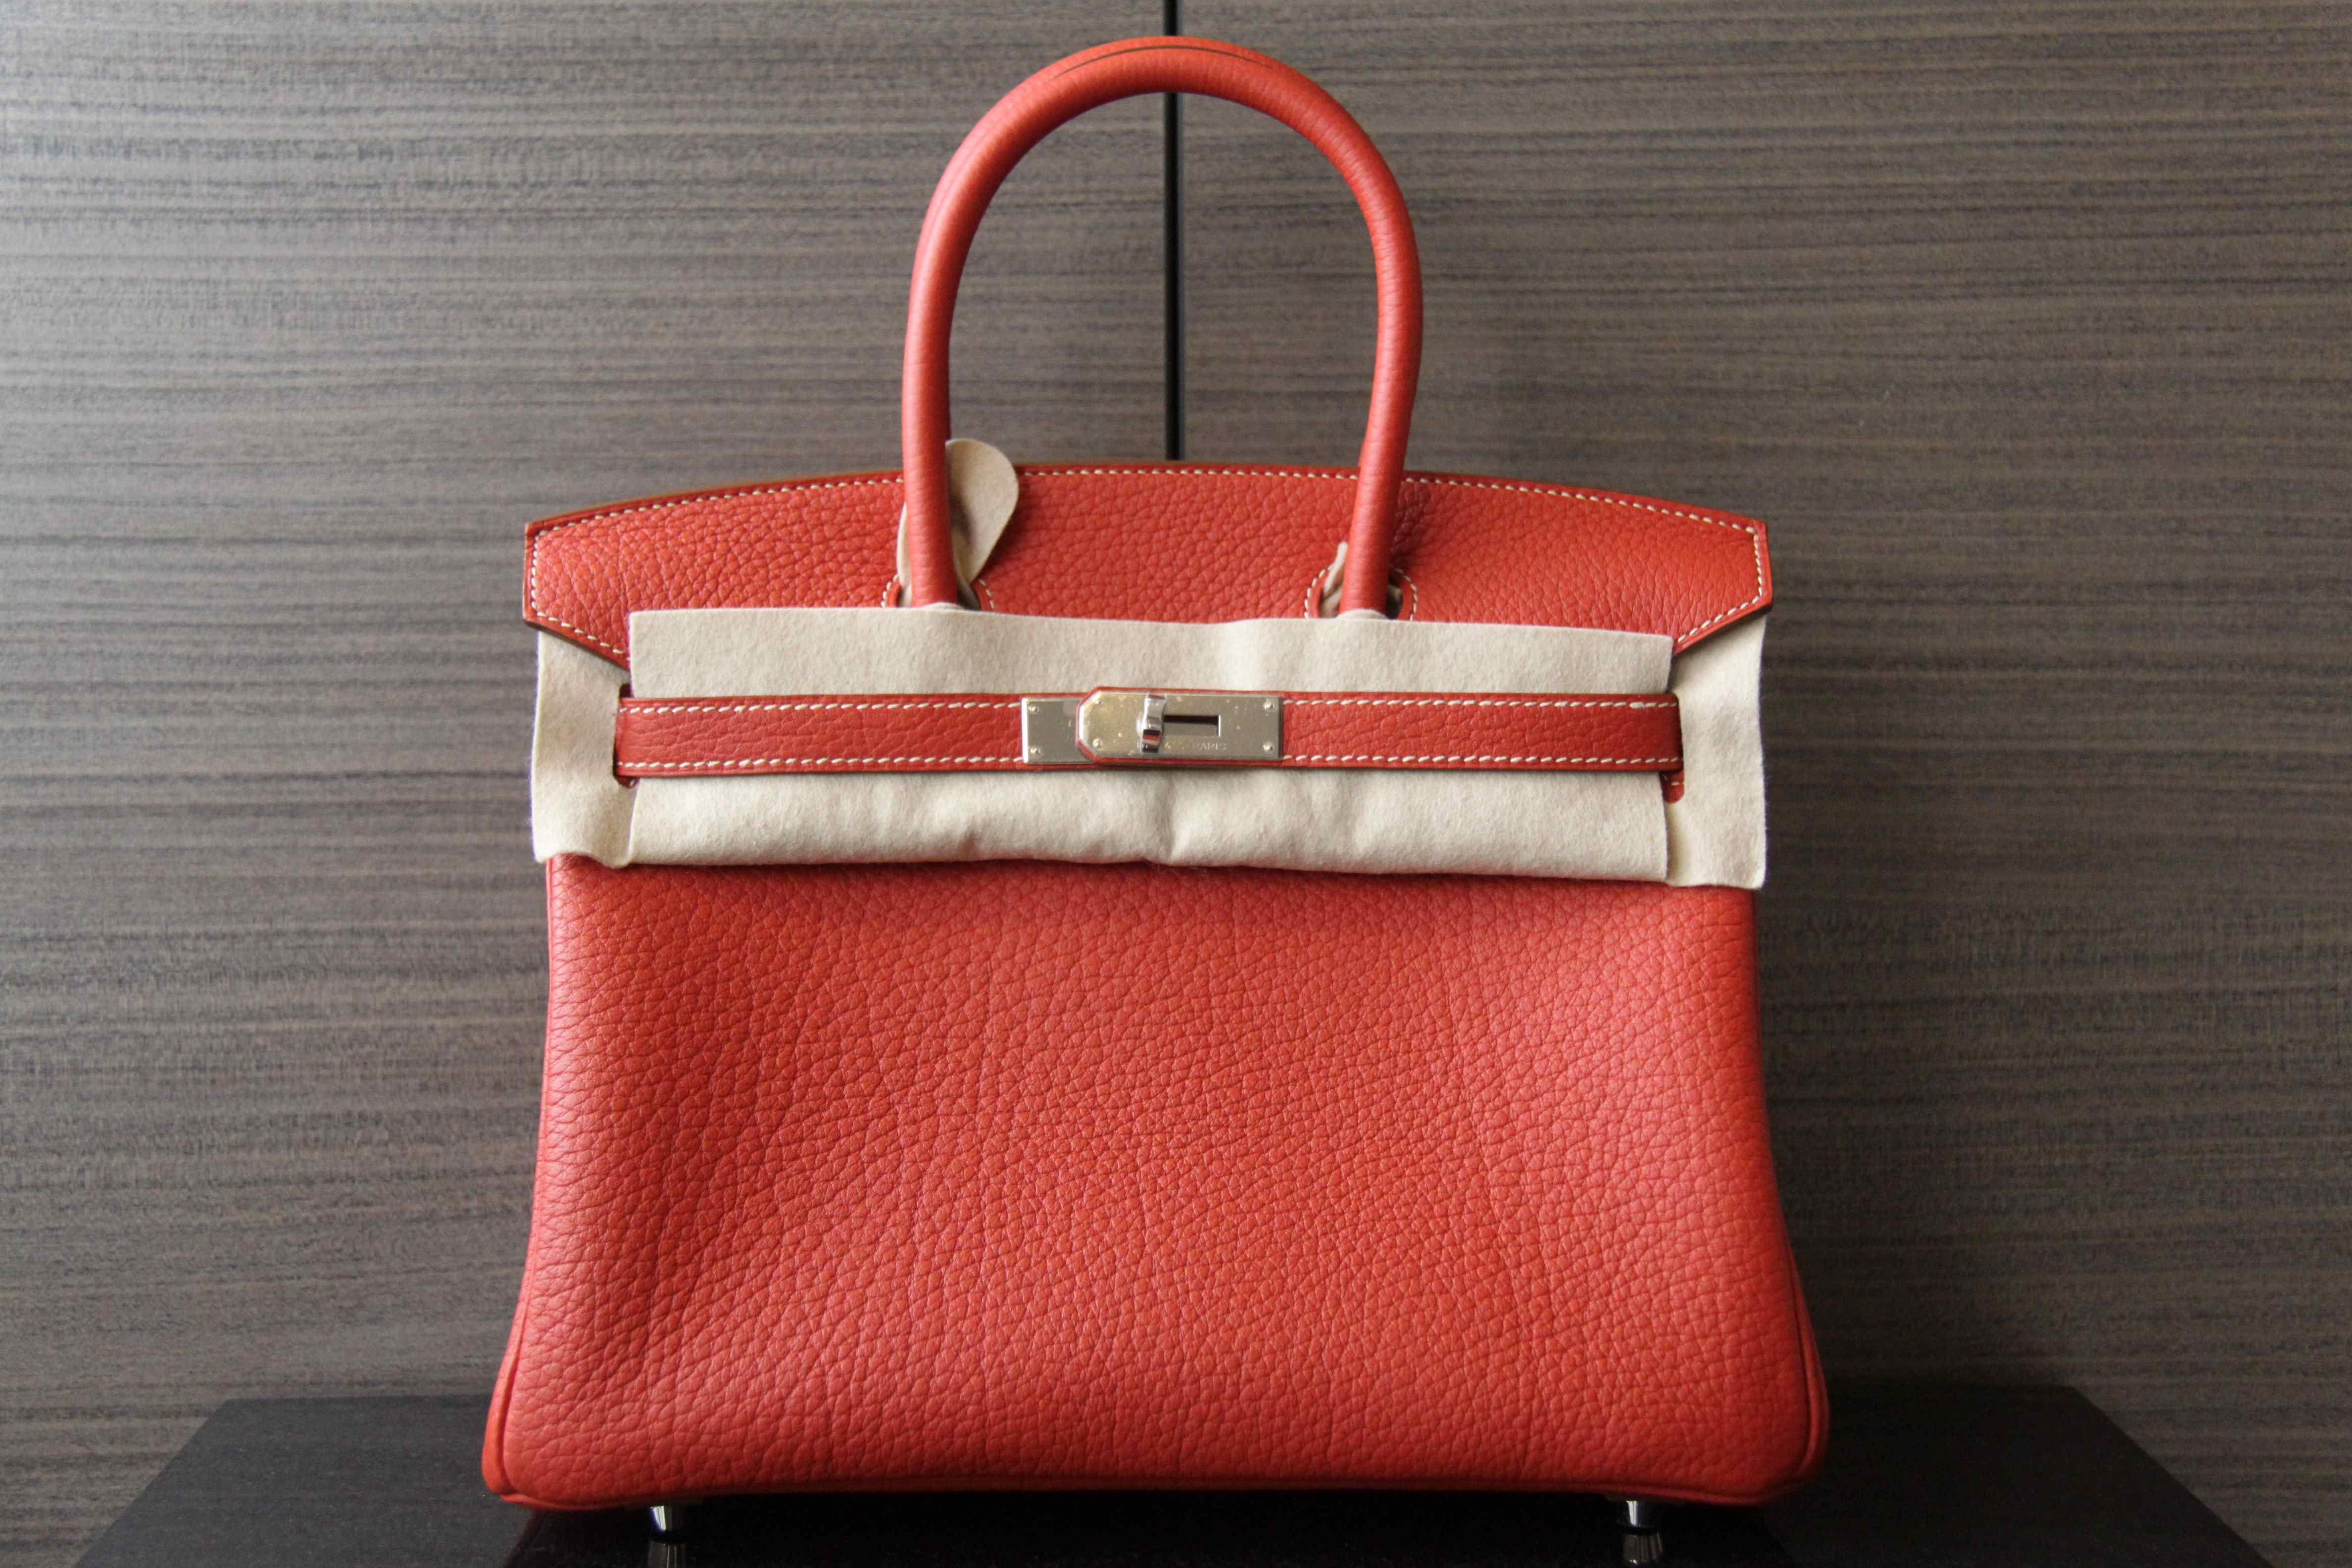 FWRD Renew Hermes Kelly 32cm Handbag in Lime